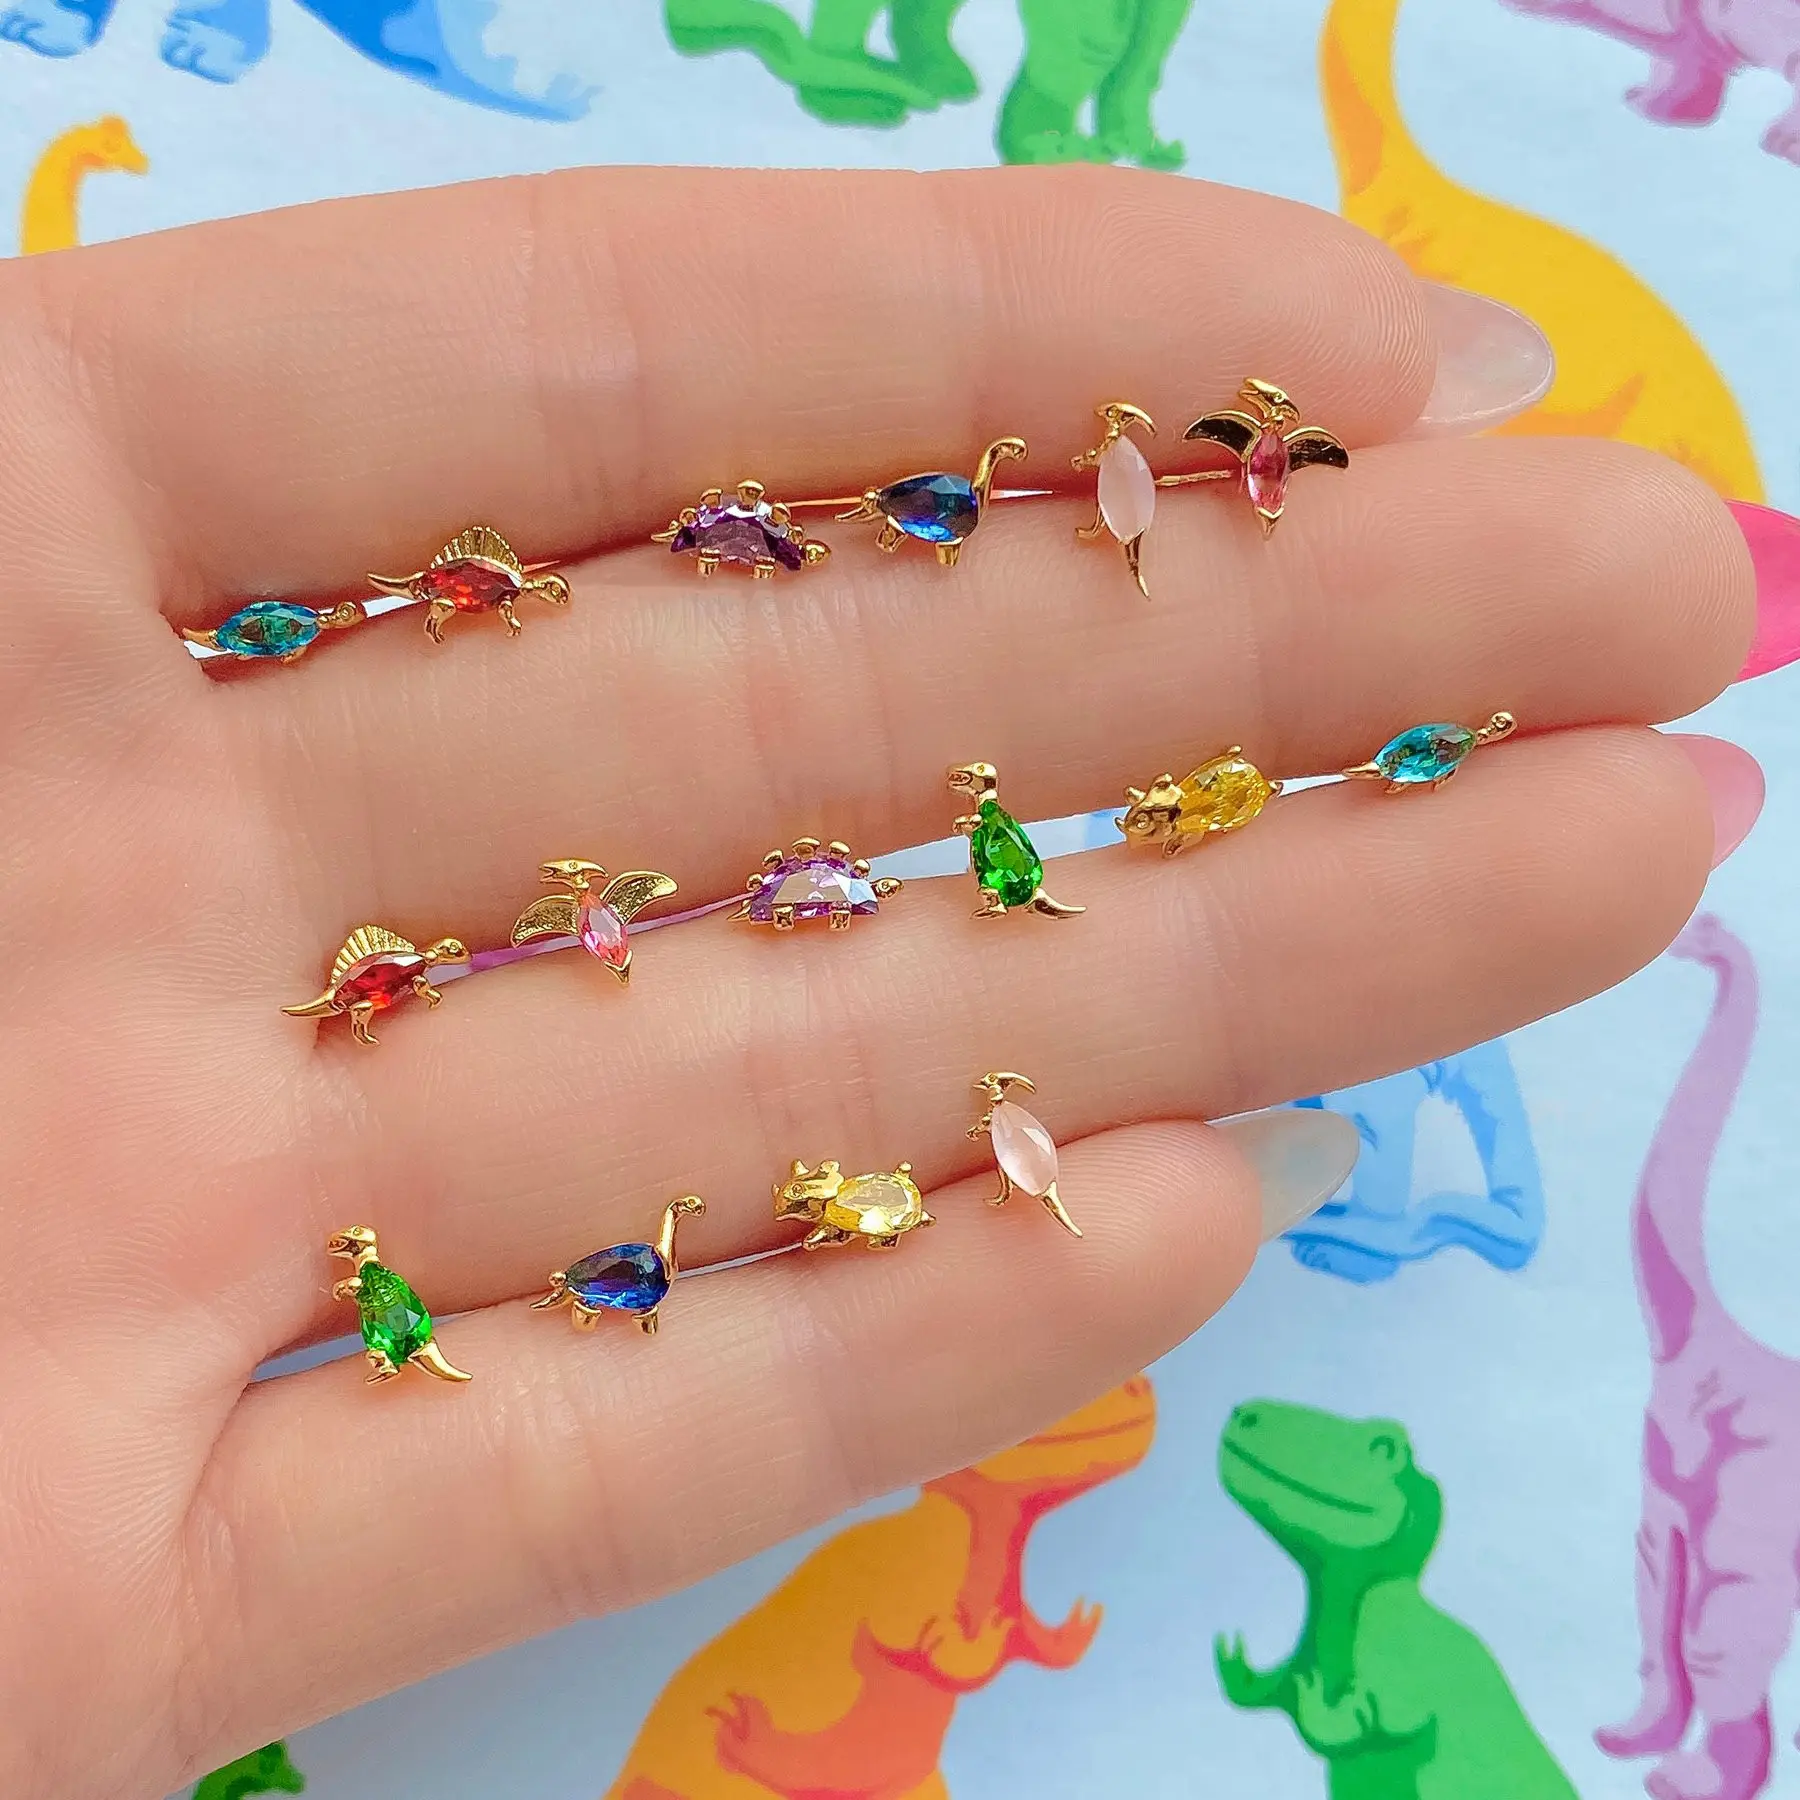 Minimalist Cartoon Animal Stud Earrings for Fashion Jewelry Earrings 18K Gold Plated Multi Crystal Earrings for Women Girls